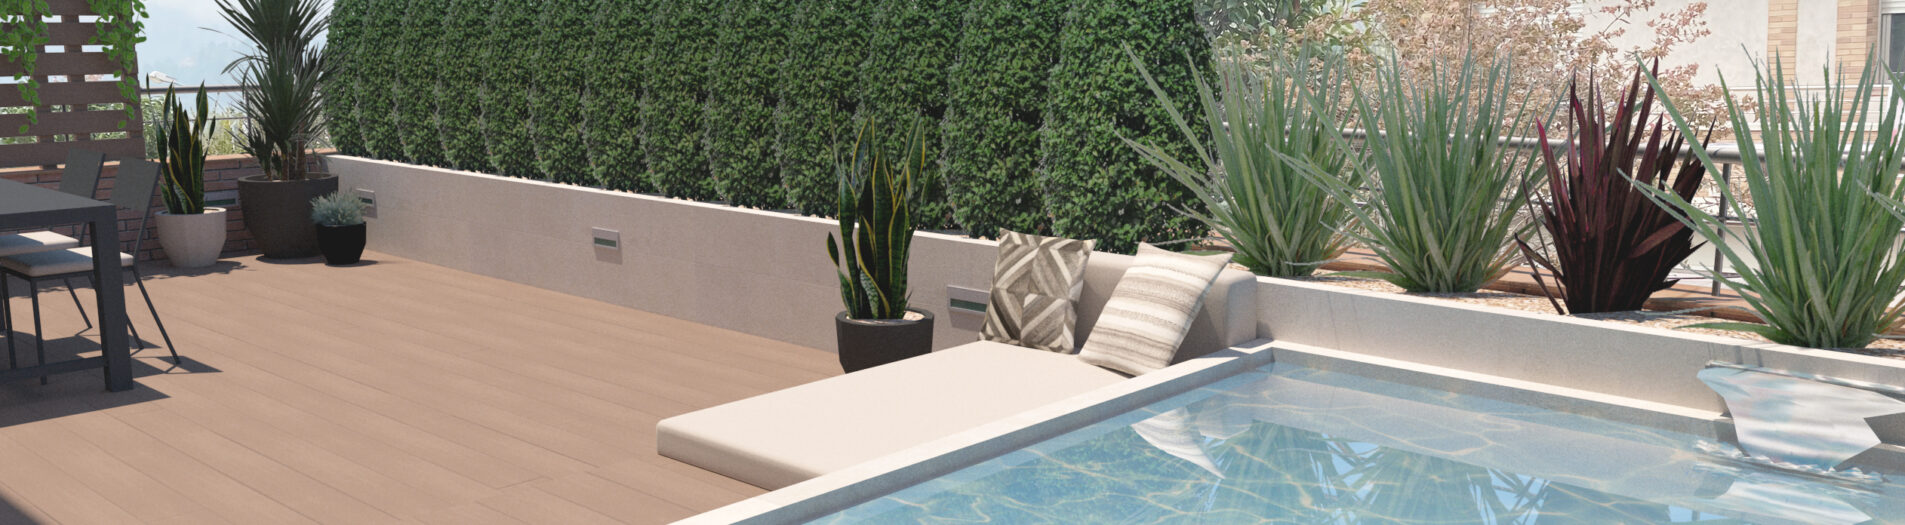 Terrace & pool design in Sallent